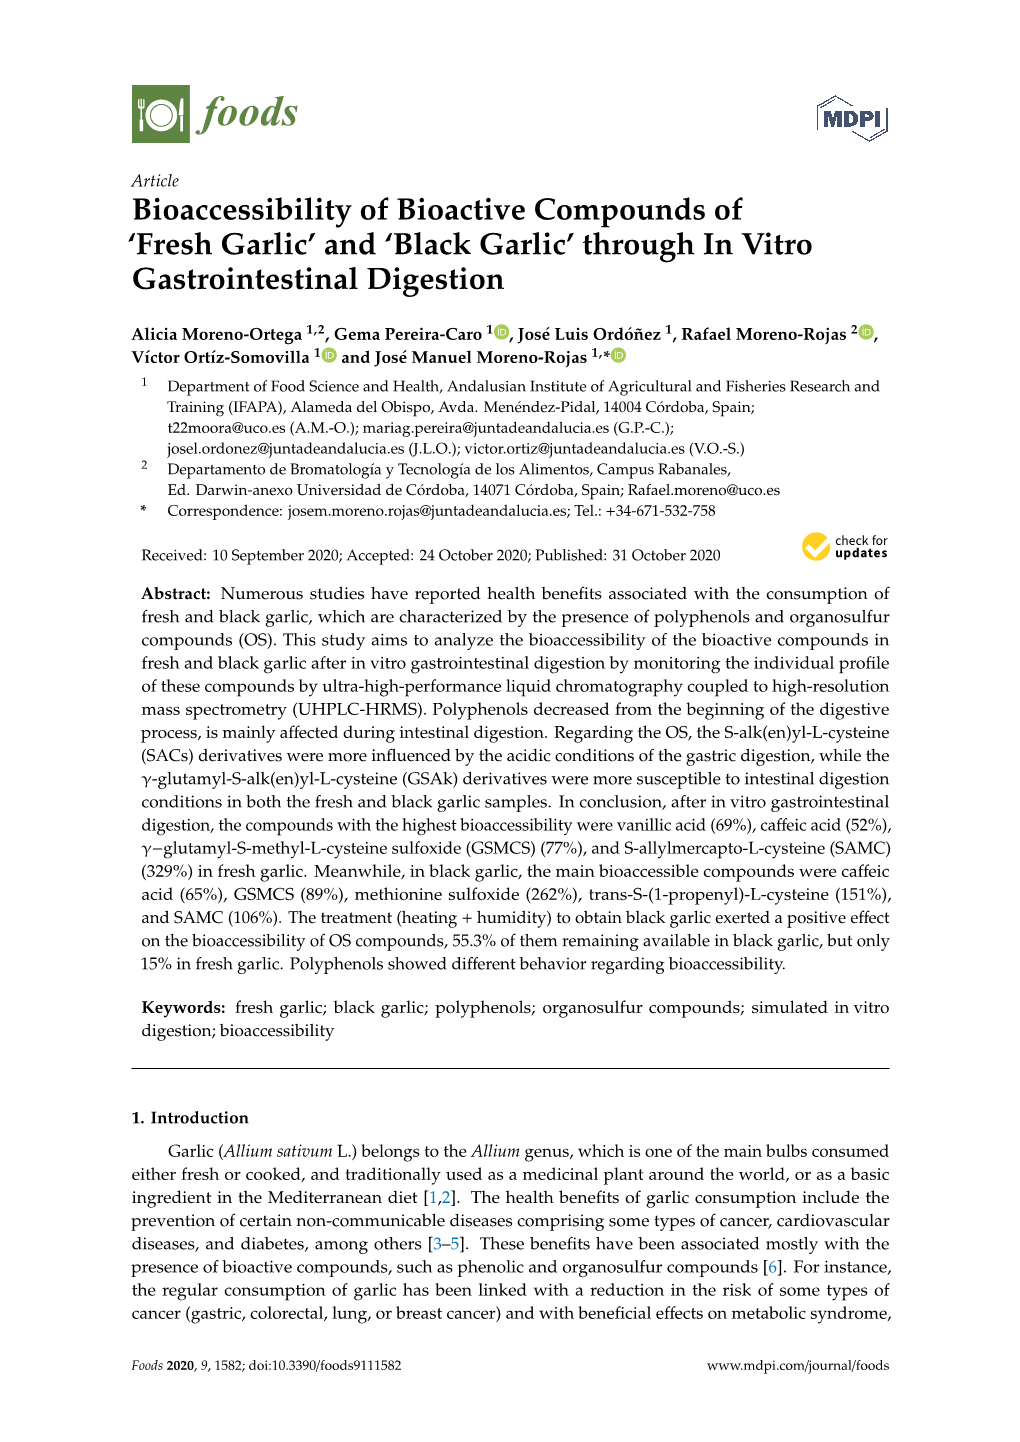 'Black Garlic' Through in Vitro Gastrointestinal Digestion